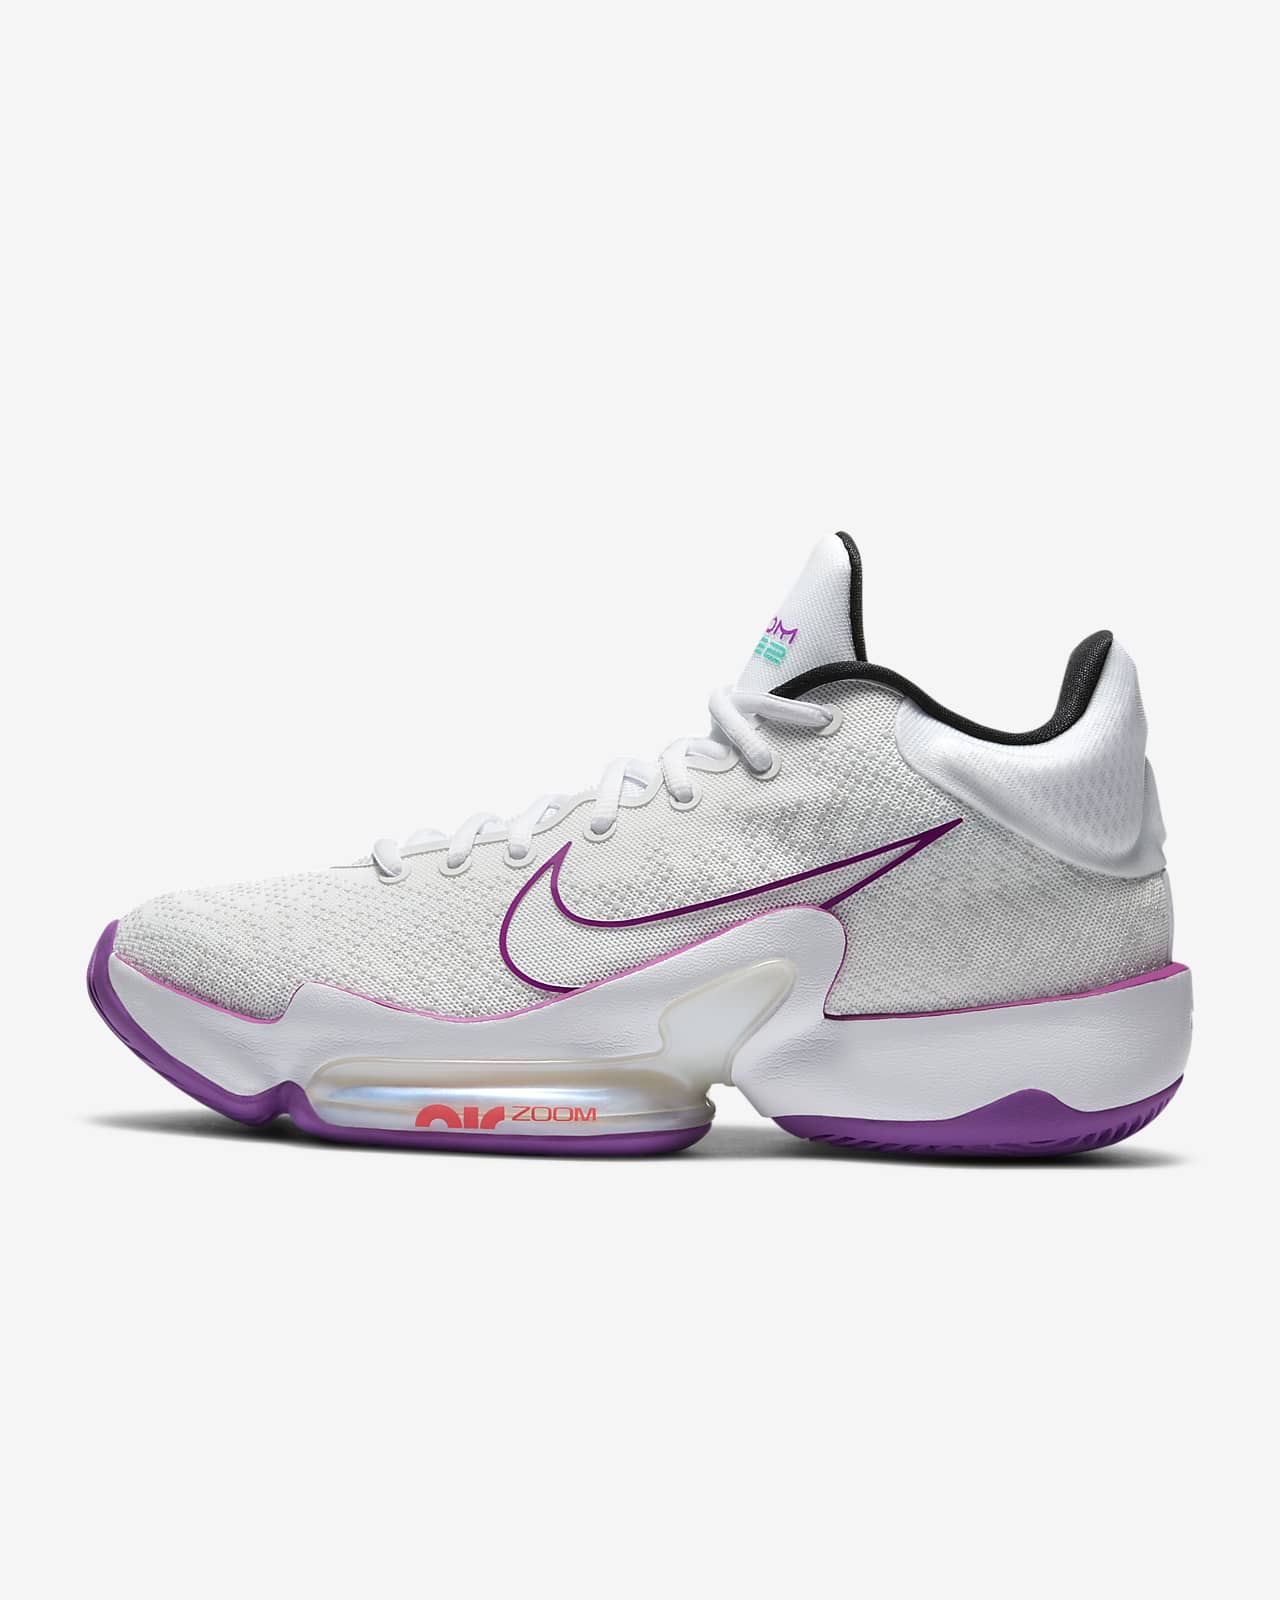 Nike Zoom Rize 2 Basketball Shoe. Nike SG